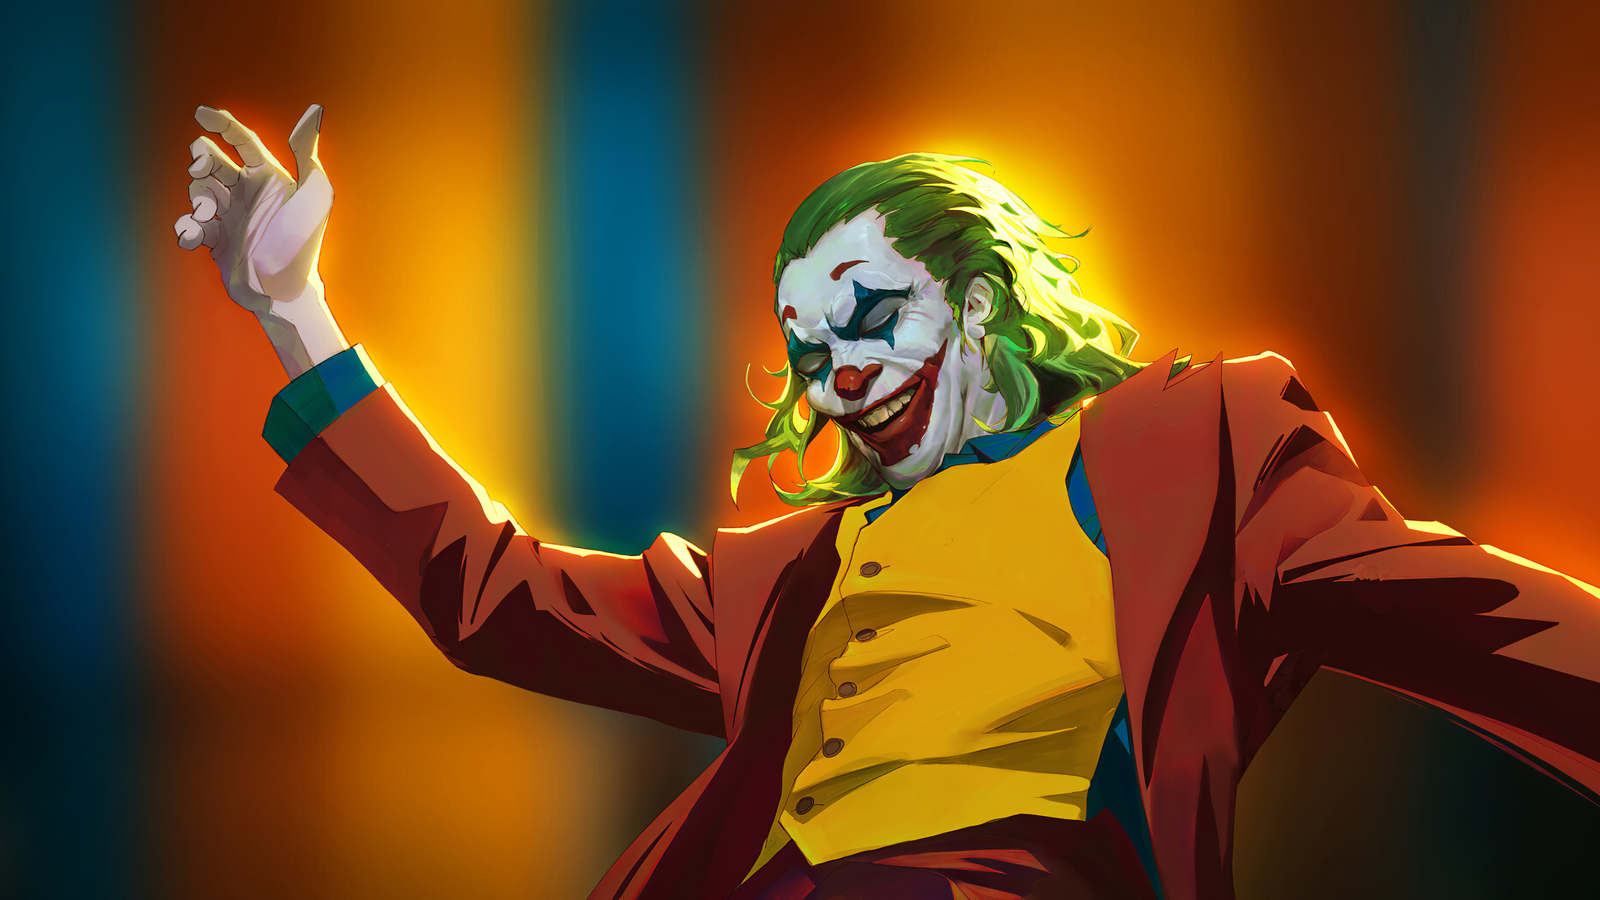 1600x900 Joker Danger Laugh 1600x900 Resolution HD 4k Wallpapers ...